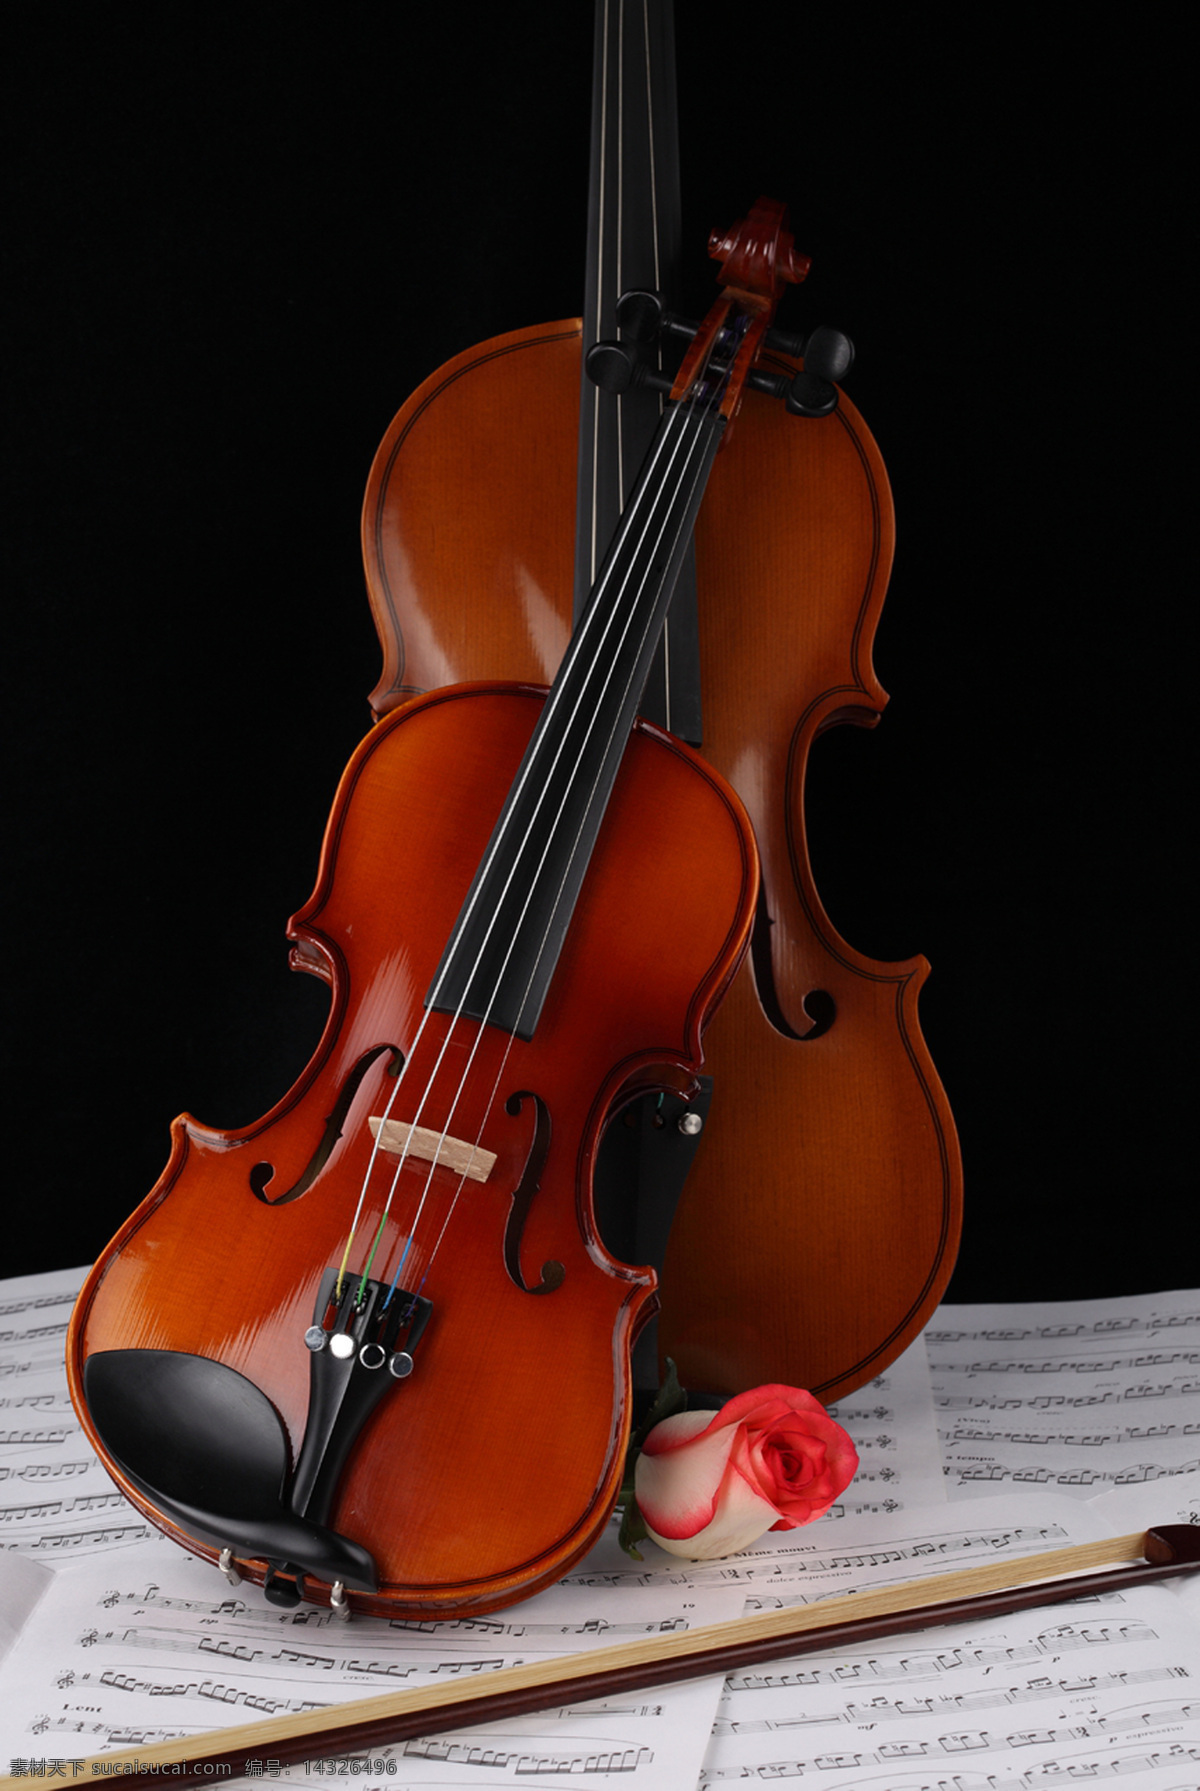 小提琴 乐器 乐谱 小提琴素材 高清图片 jpg图库 摄影图片 小提琴图片 高清 小提琴图库 小提琴特写 全身 影音娱乐 生活百科